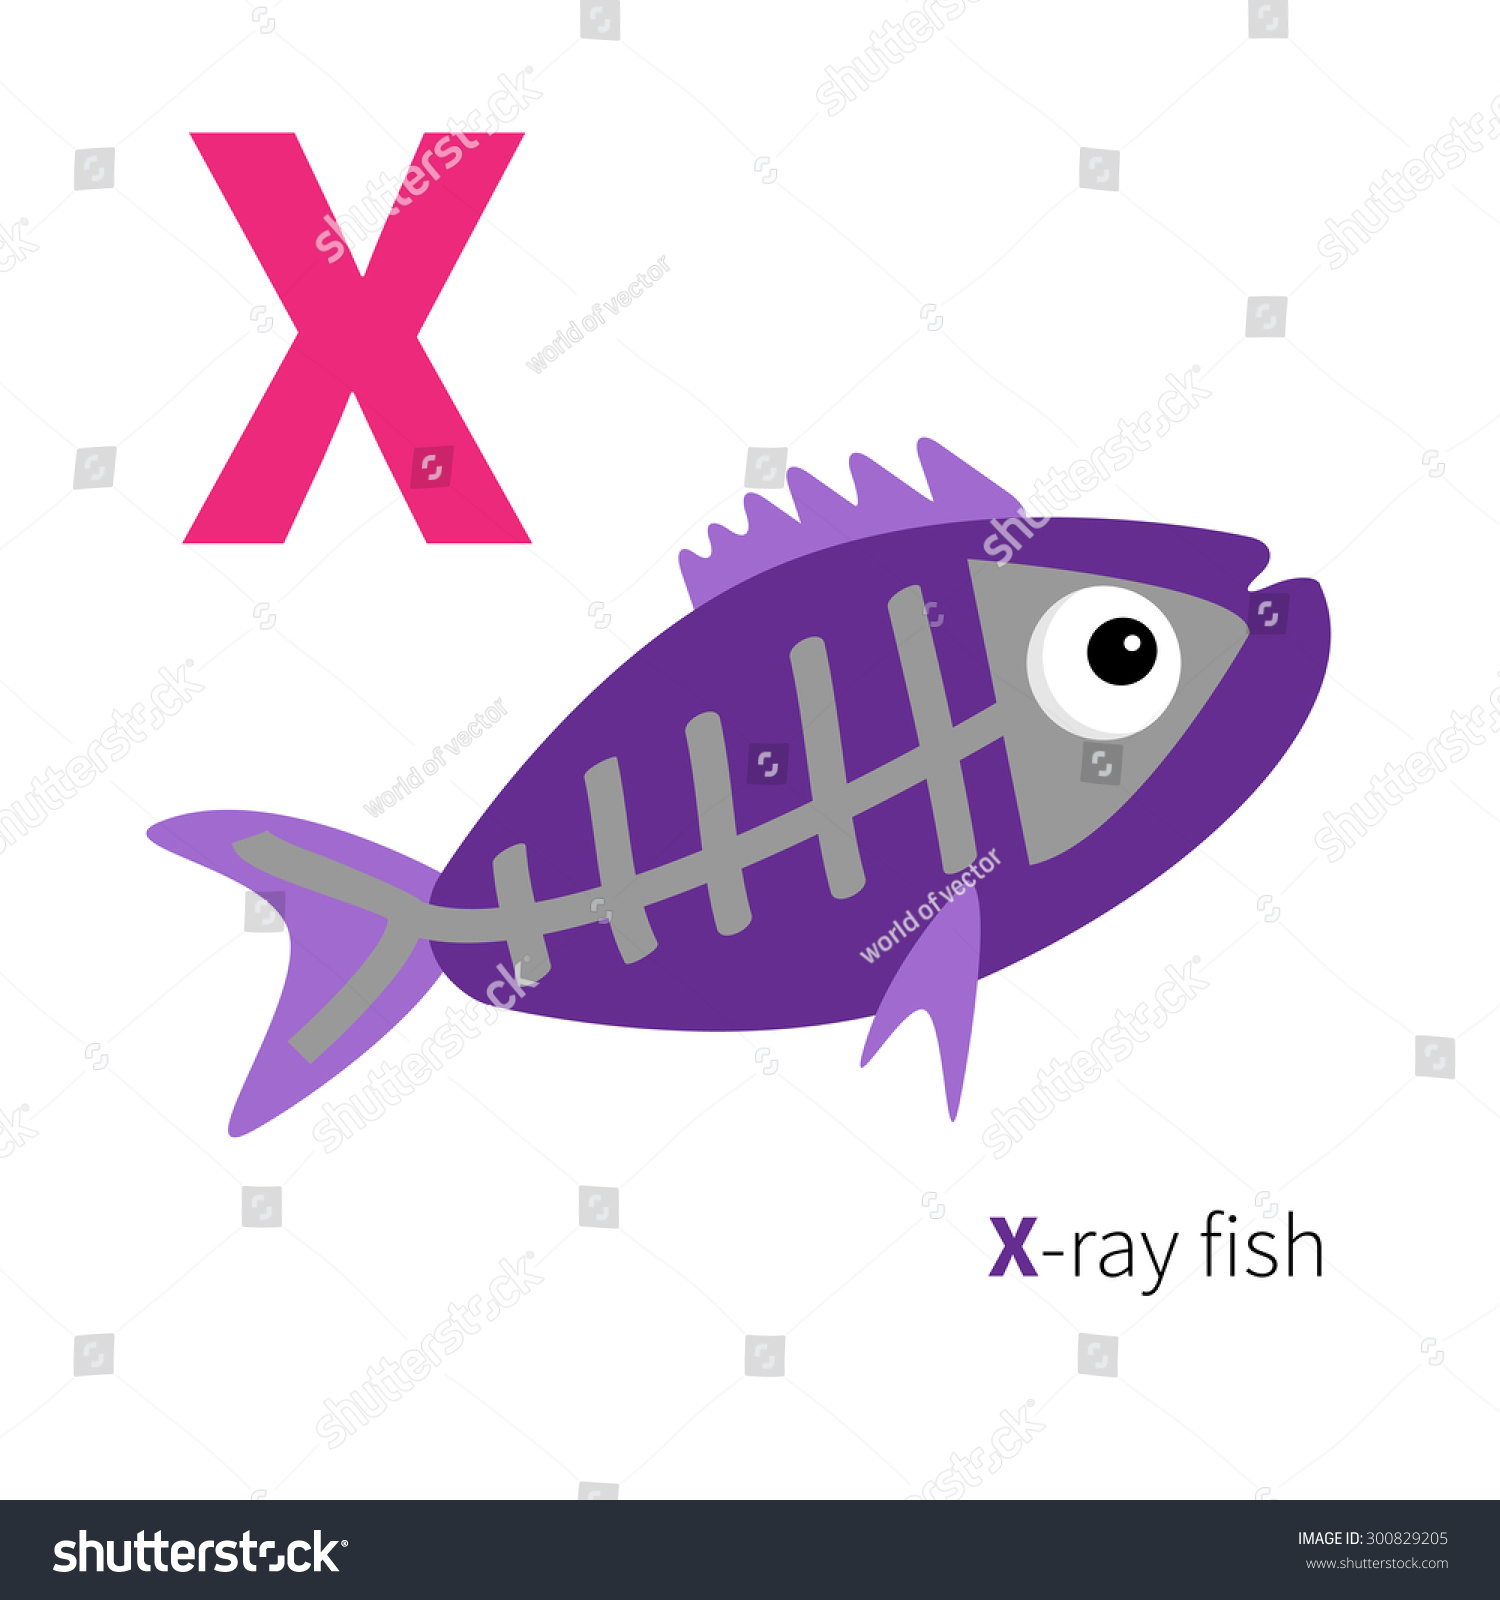 x ray fish clipart - photo #24